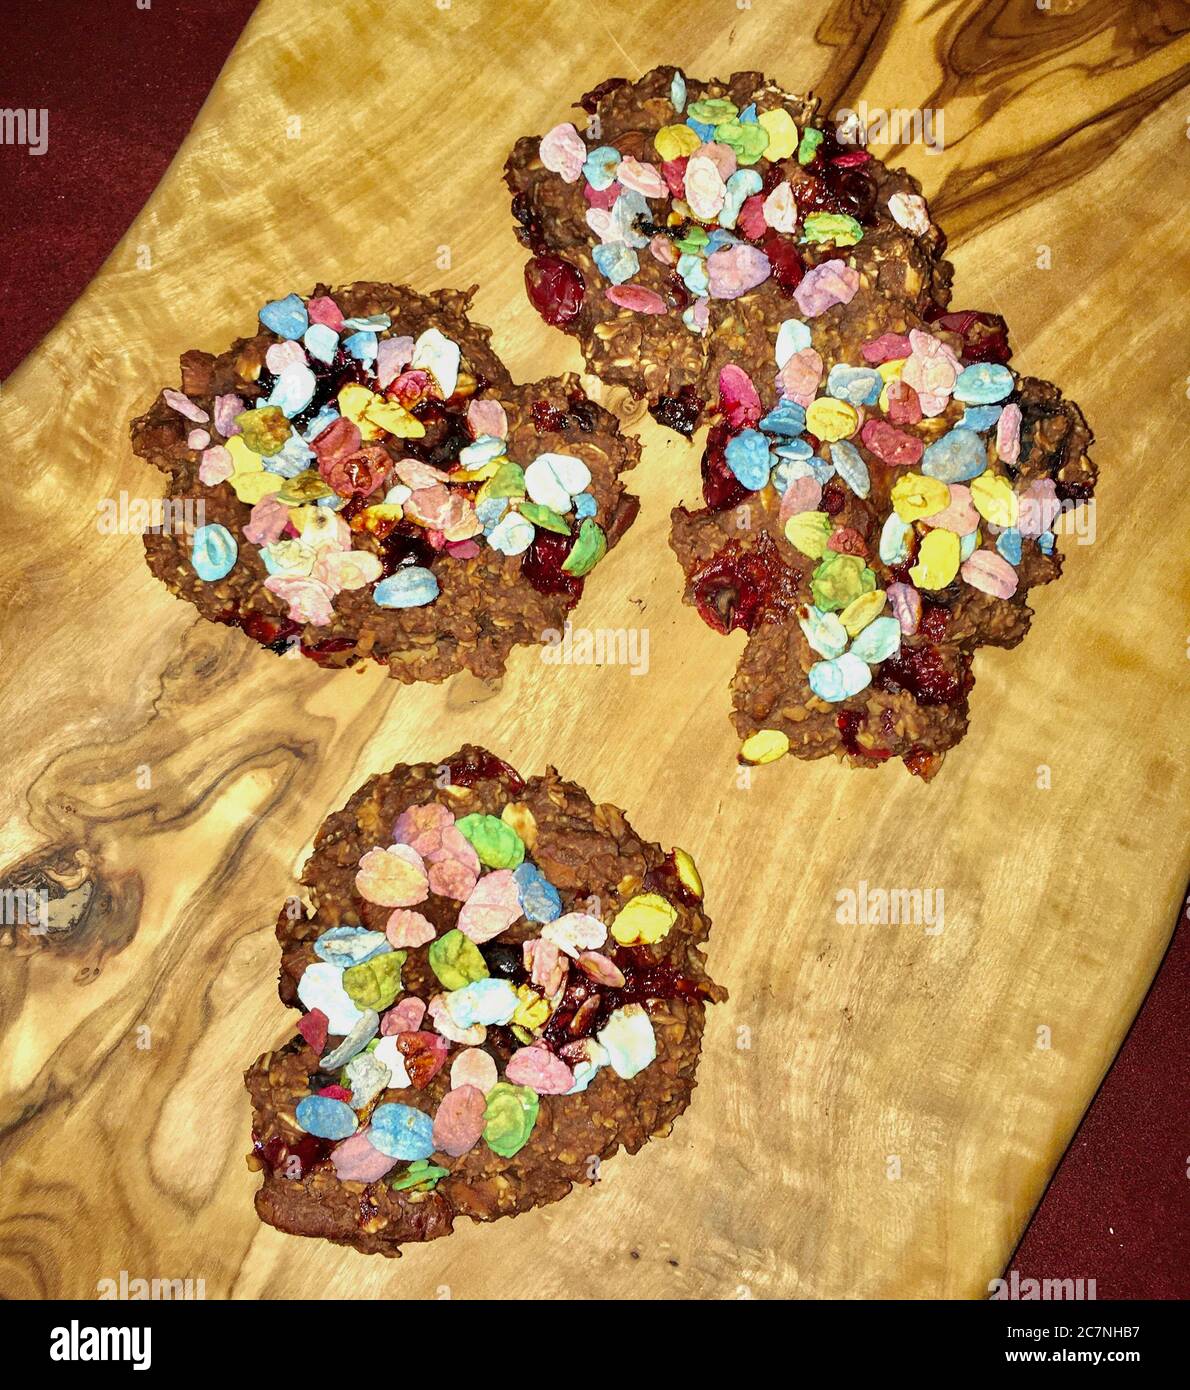 Haferflocken Brownie Kekse, mit Früchten und bunten Flakes Stock Photo